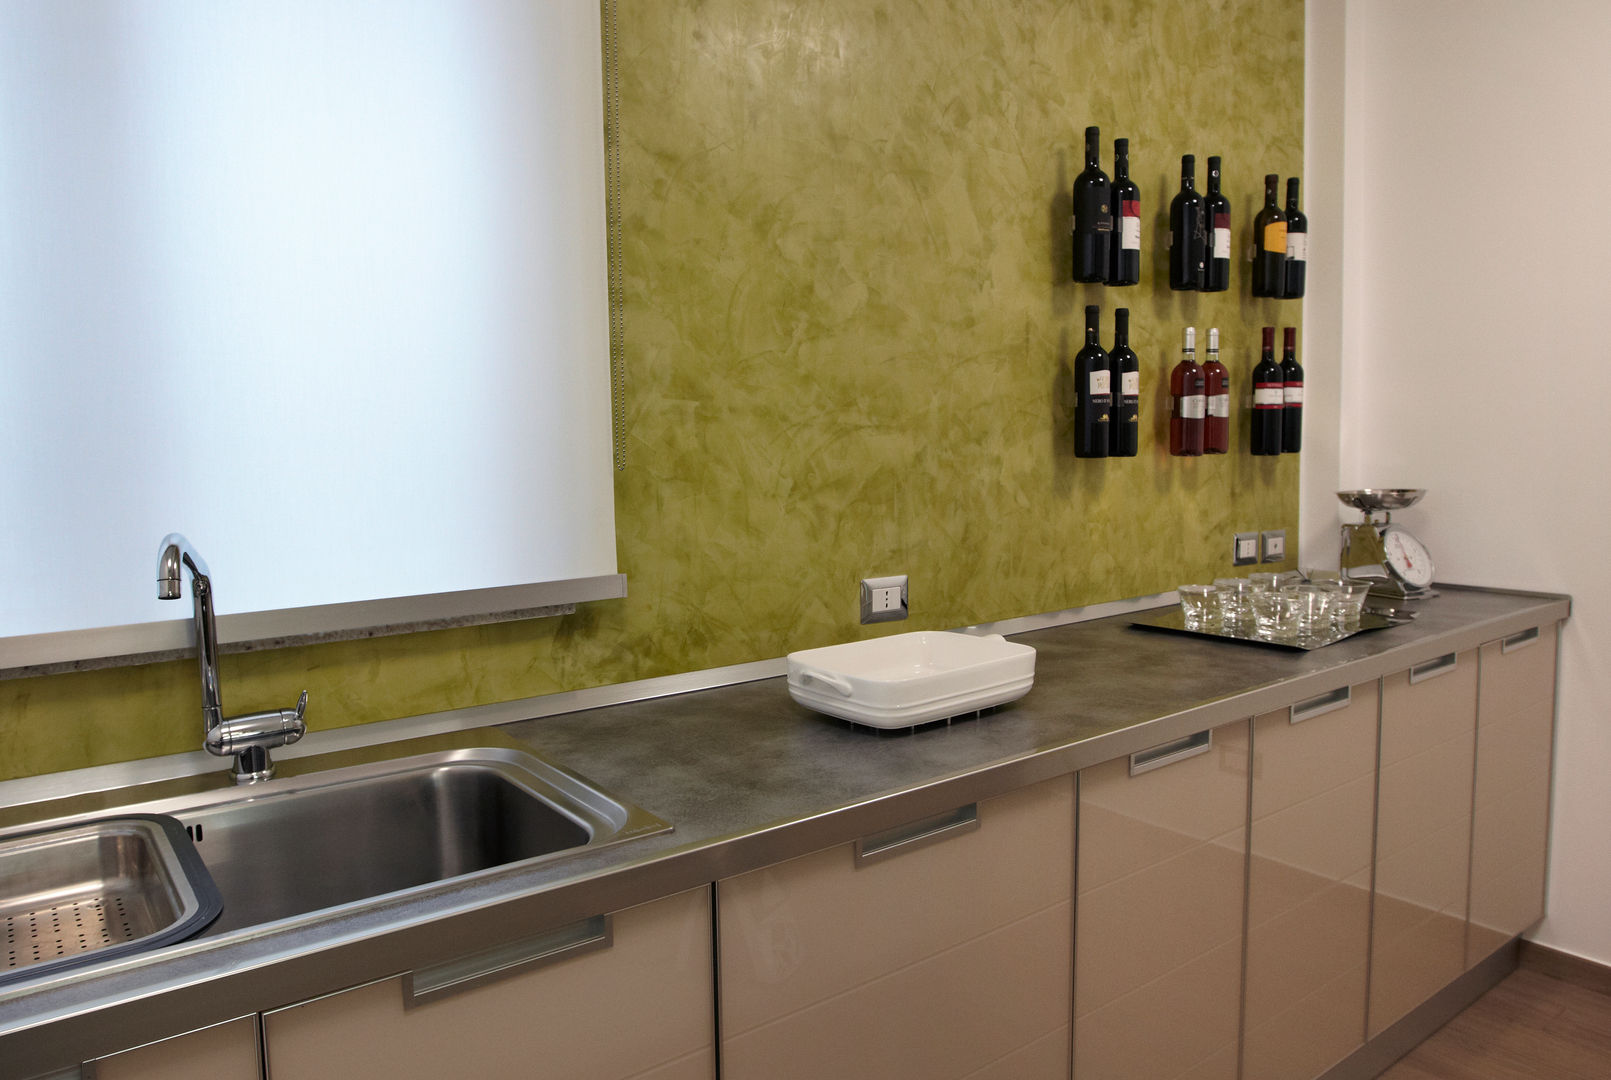 Colore e calore: riqualificazione di una villa, marco olivo marco olivo Modern style kitchen